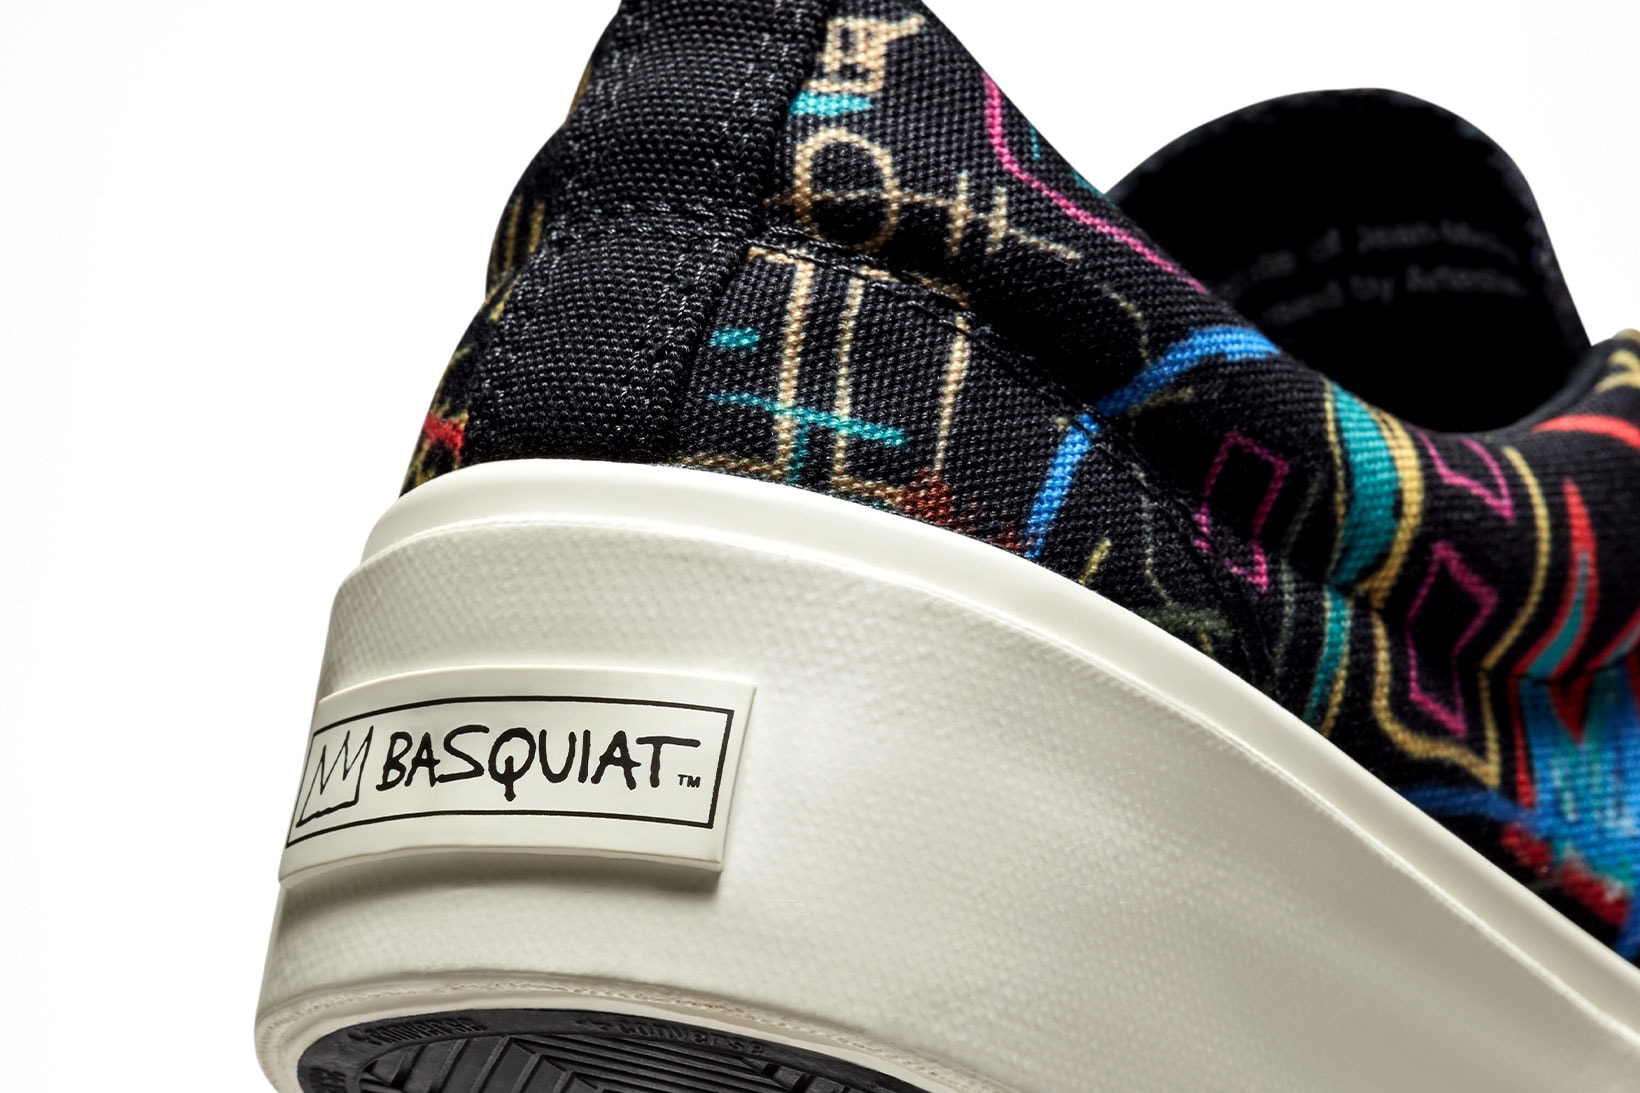 converse x basquiat skidgrip heel close up shot white logo